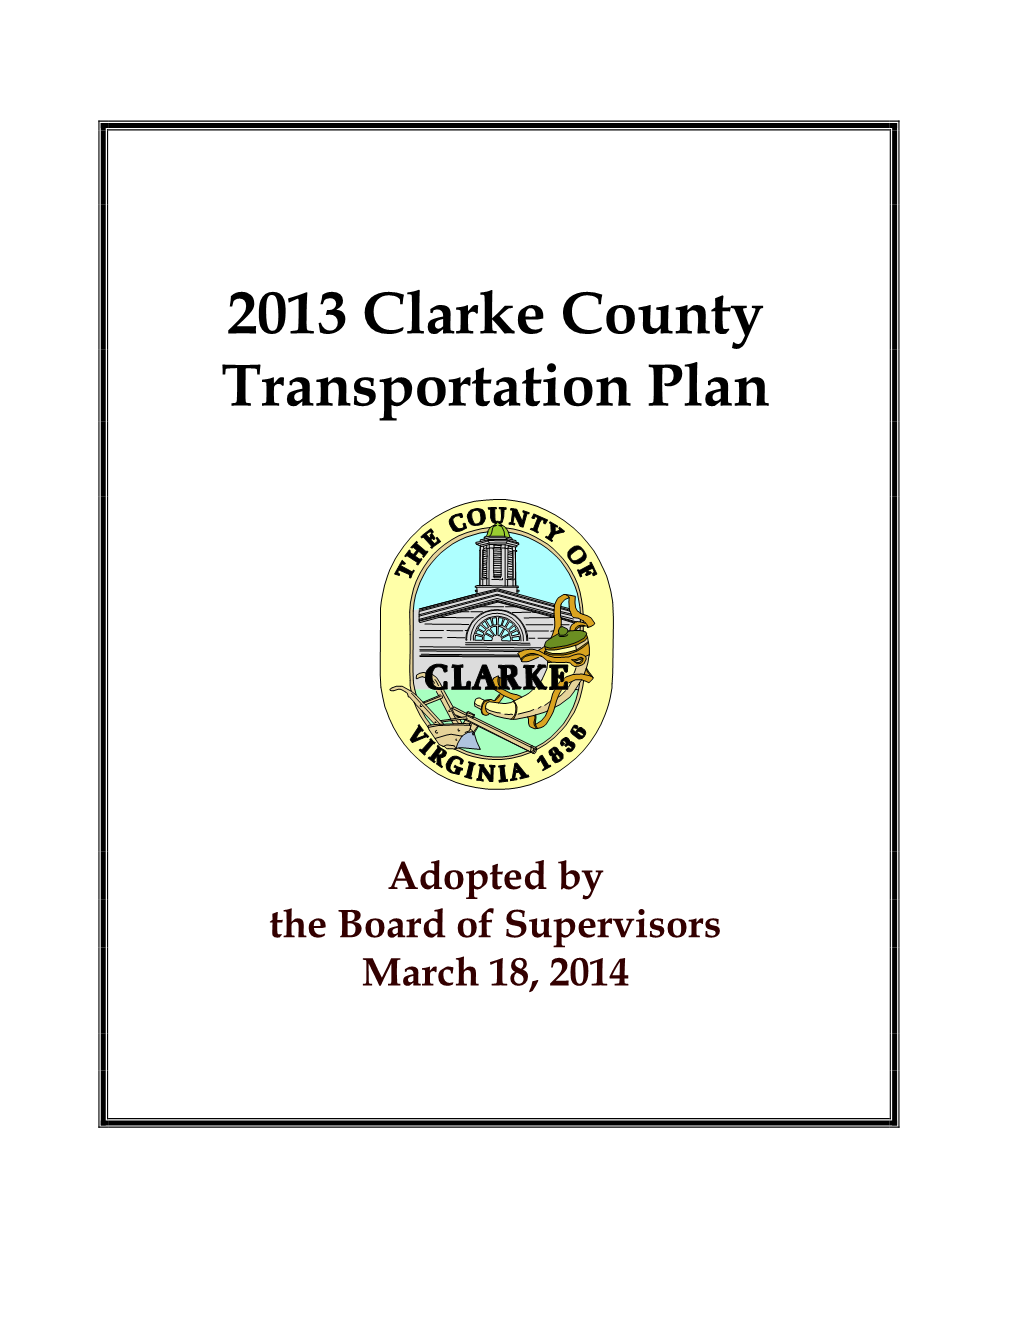 2013 Clarke County Transportation Plan